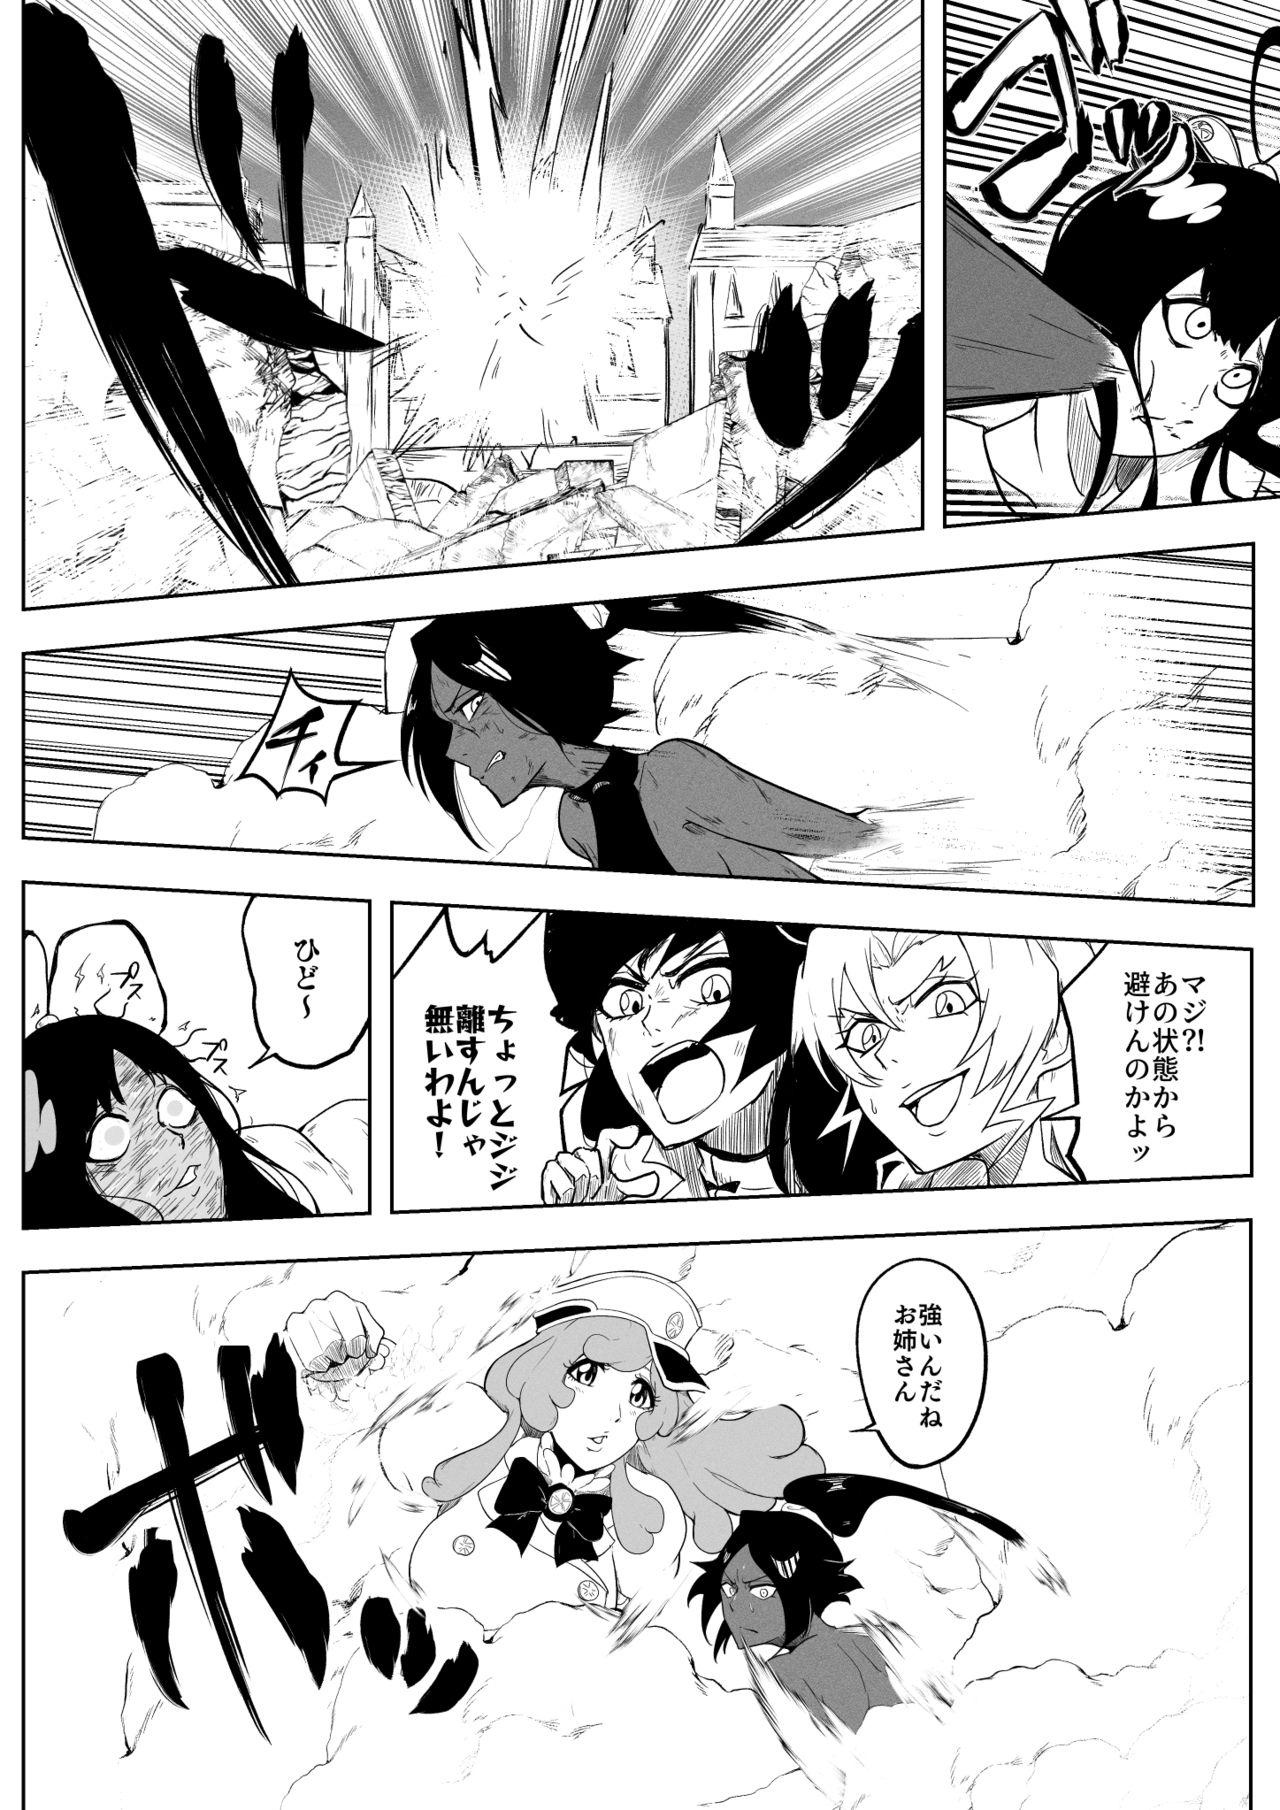 Cumfacial Yoruichi vs Bambi-chan - Bleach Assfucked - Page 13